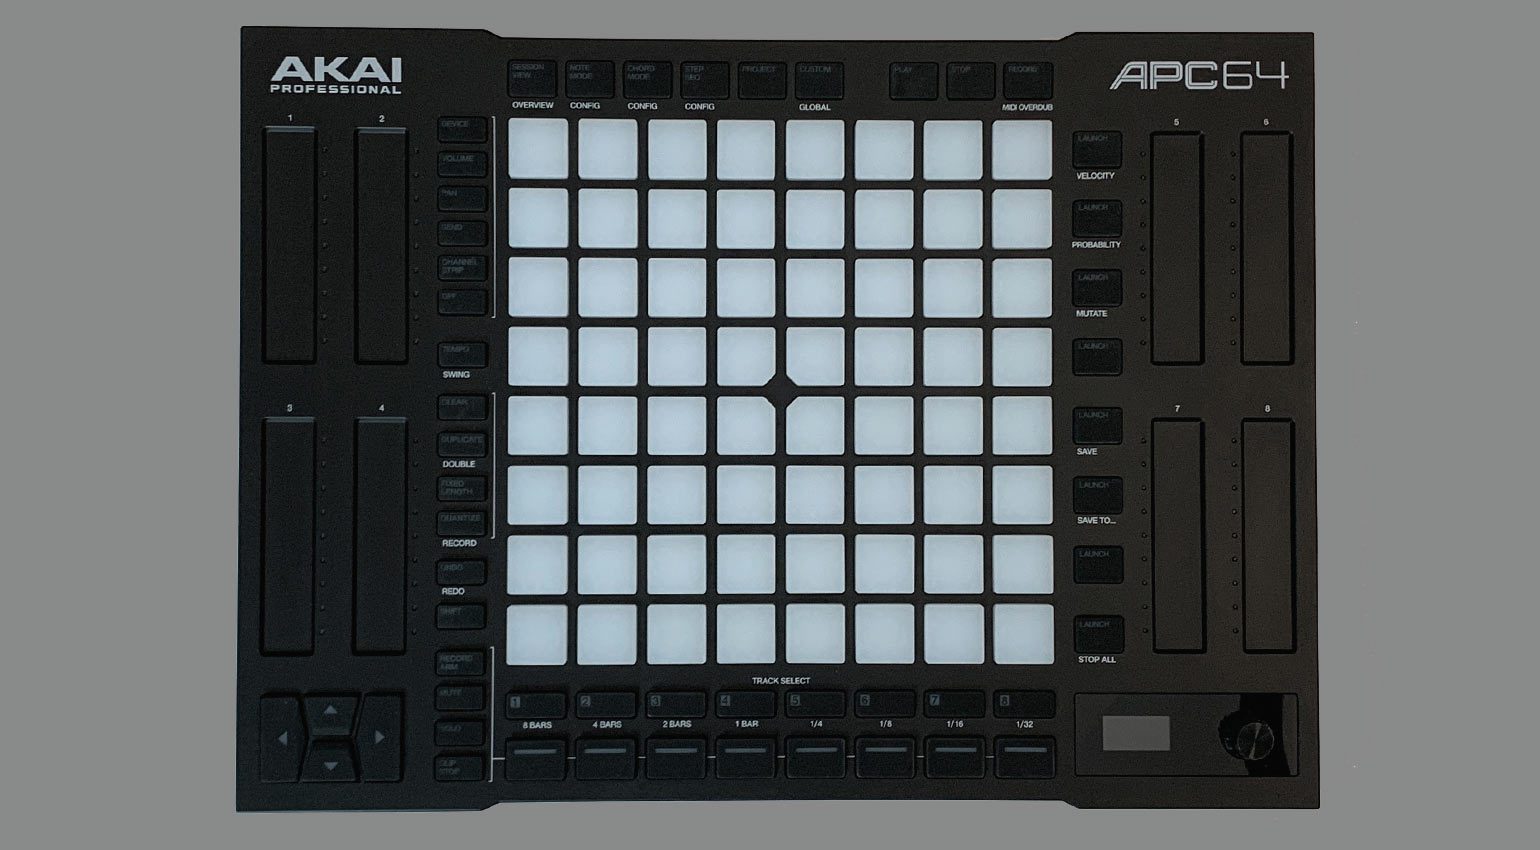 Akai APC64 review - the controller